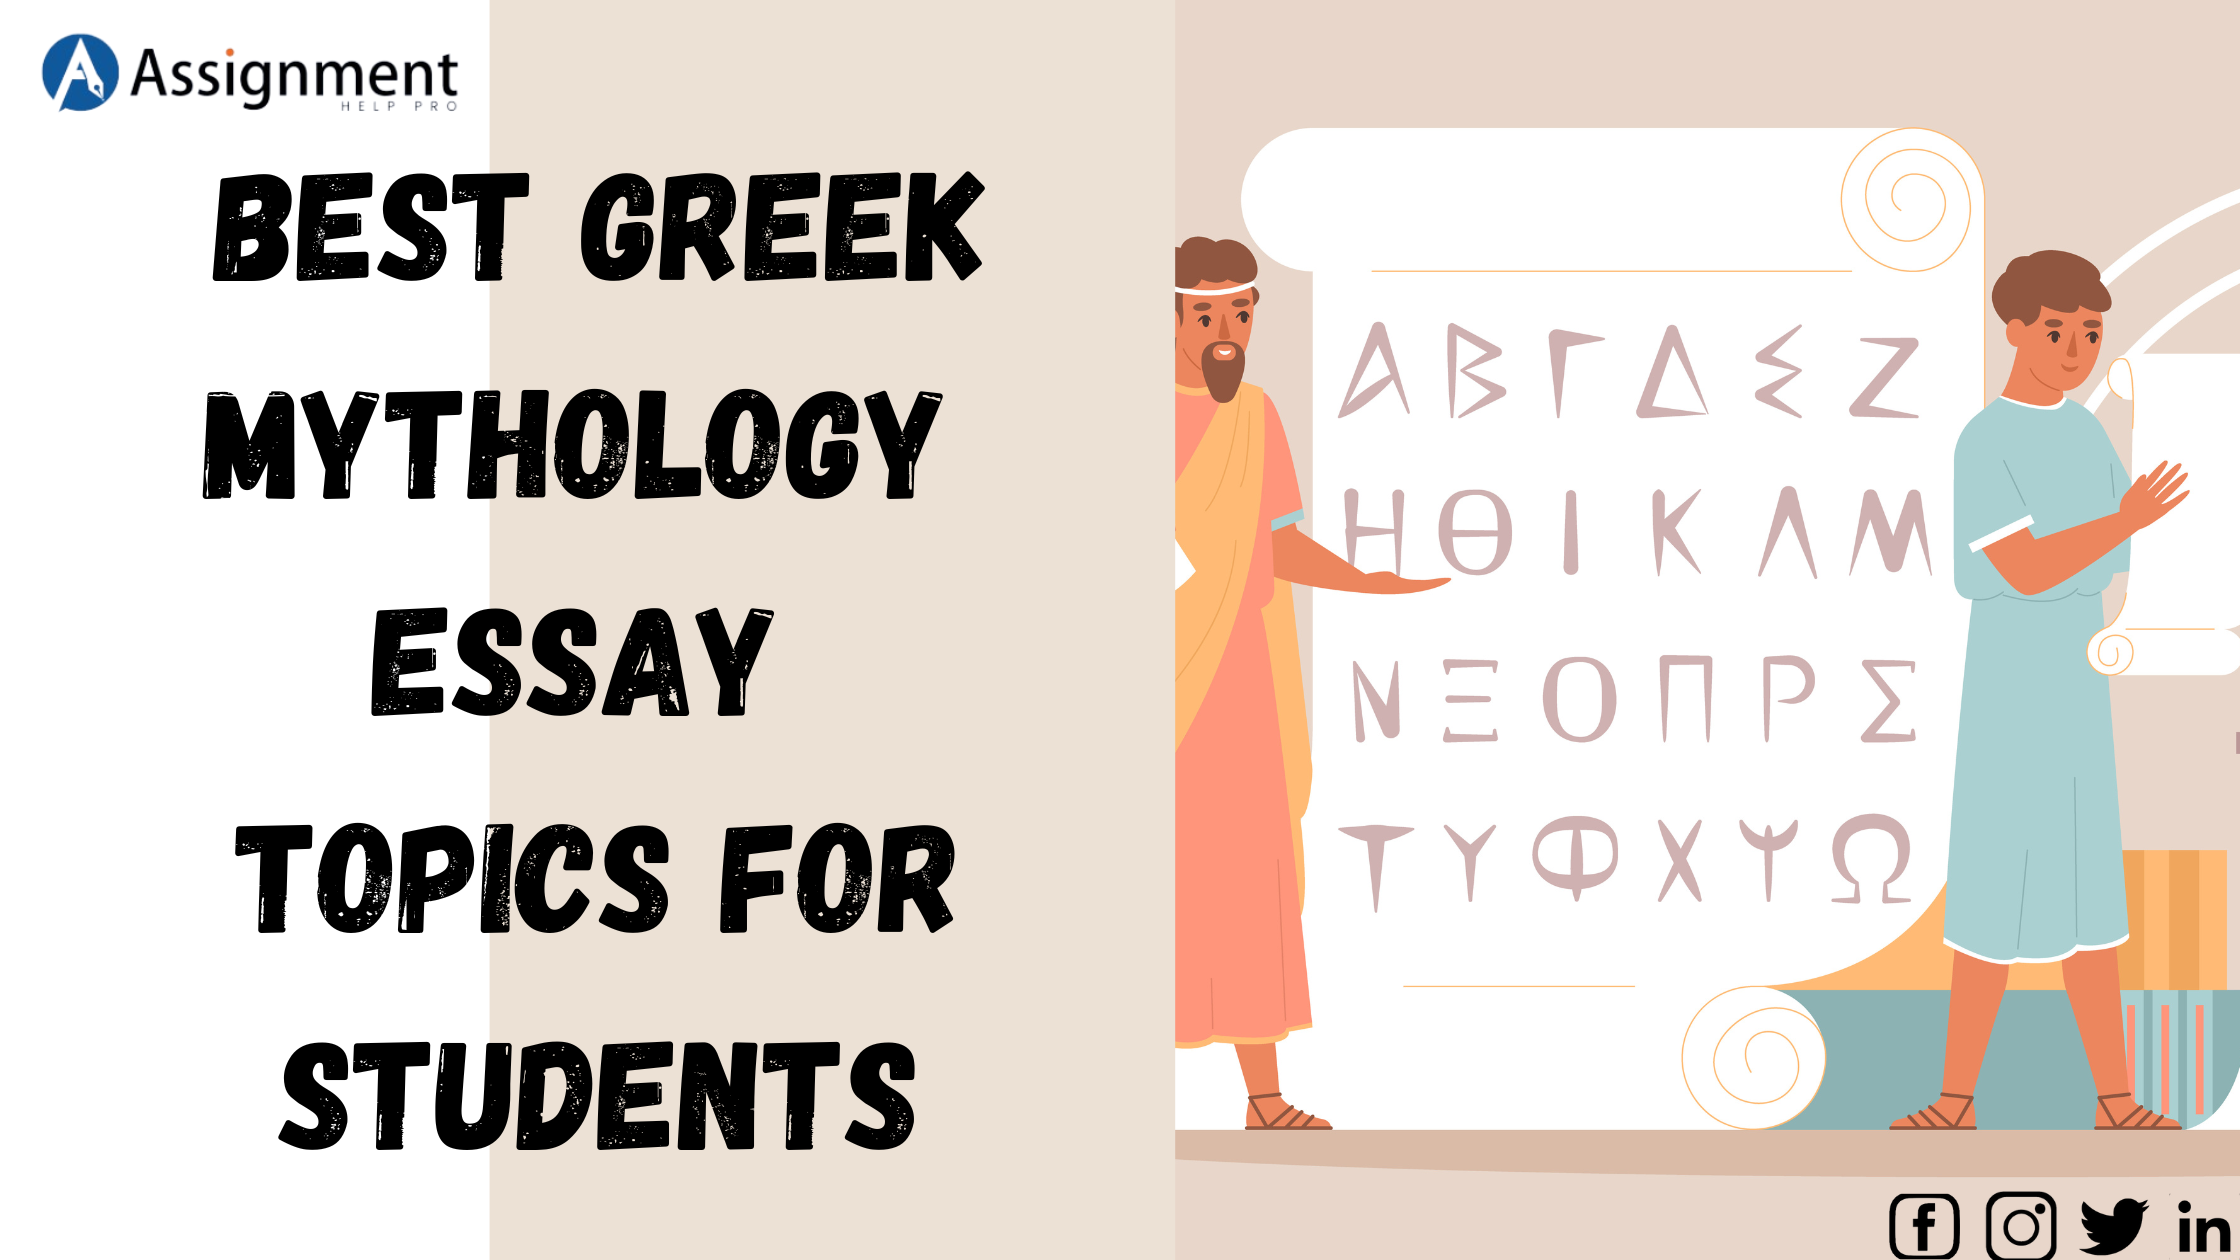 Greek Mythology Essay Topics